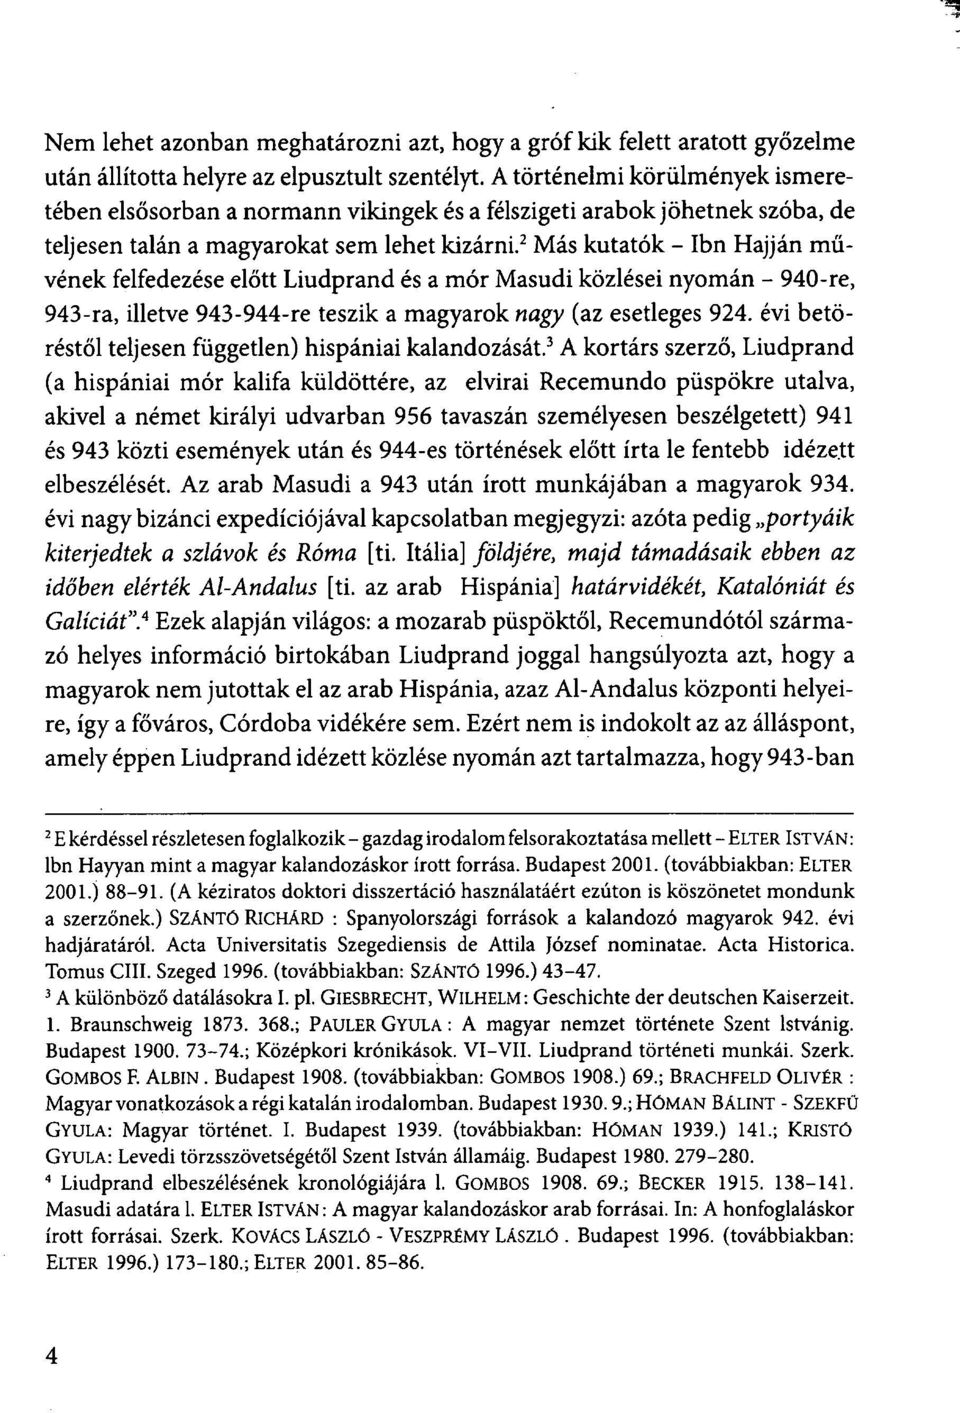 2 Más kutatók - Ibn Hajján művének felfedezése előtt Liudprand és a mór Masudi közlései nyomán - 940-re, 943-ra, illetve 943-944-re teszik a magyarok nagy (az esetleges 924.